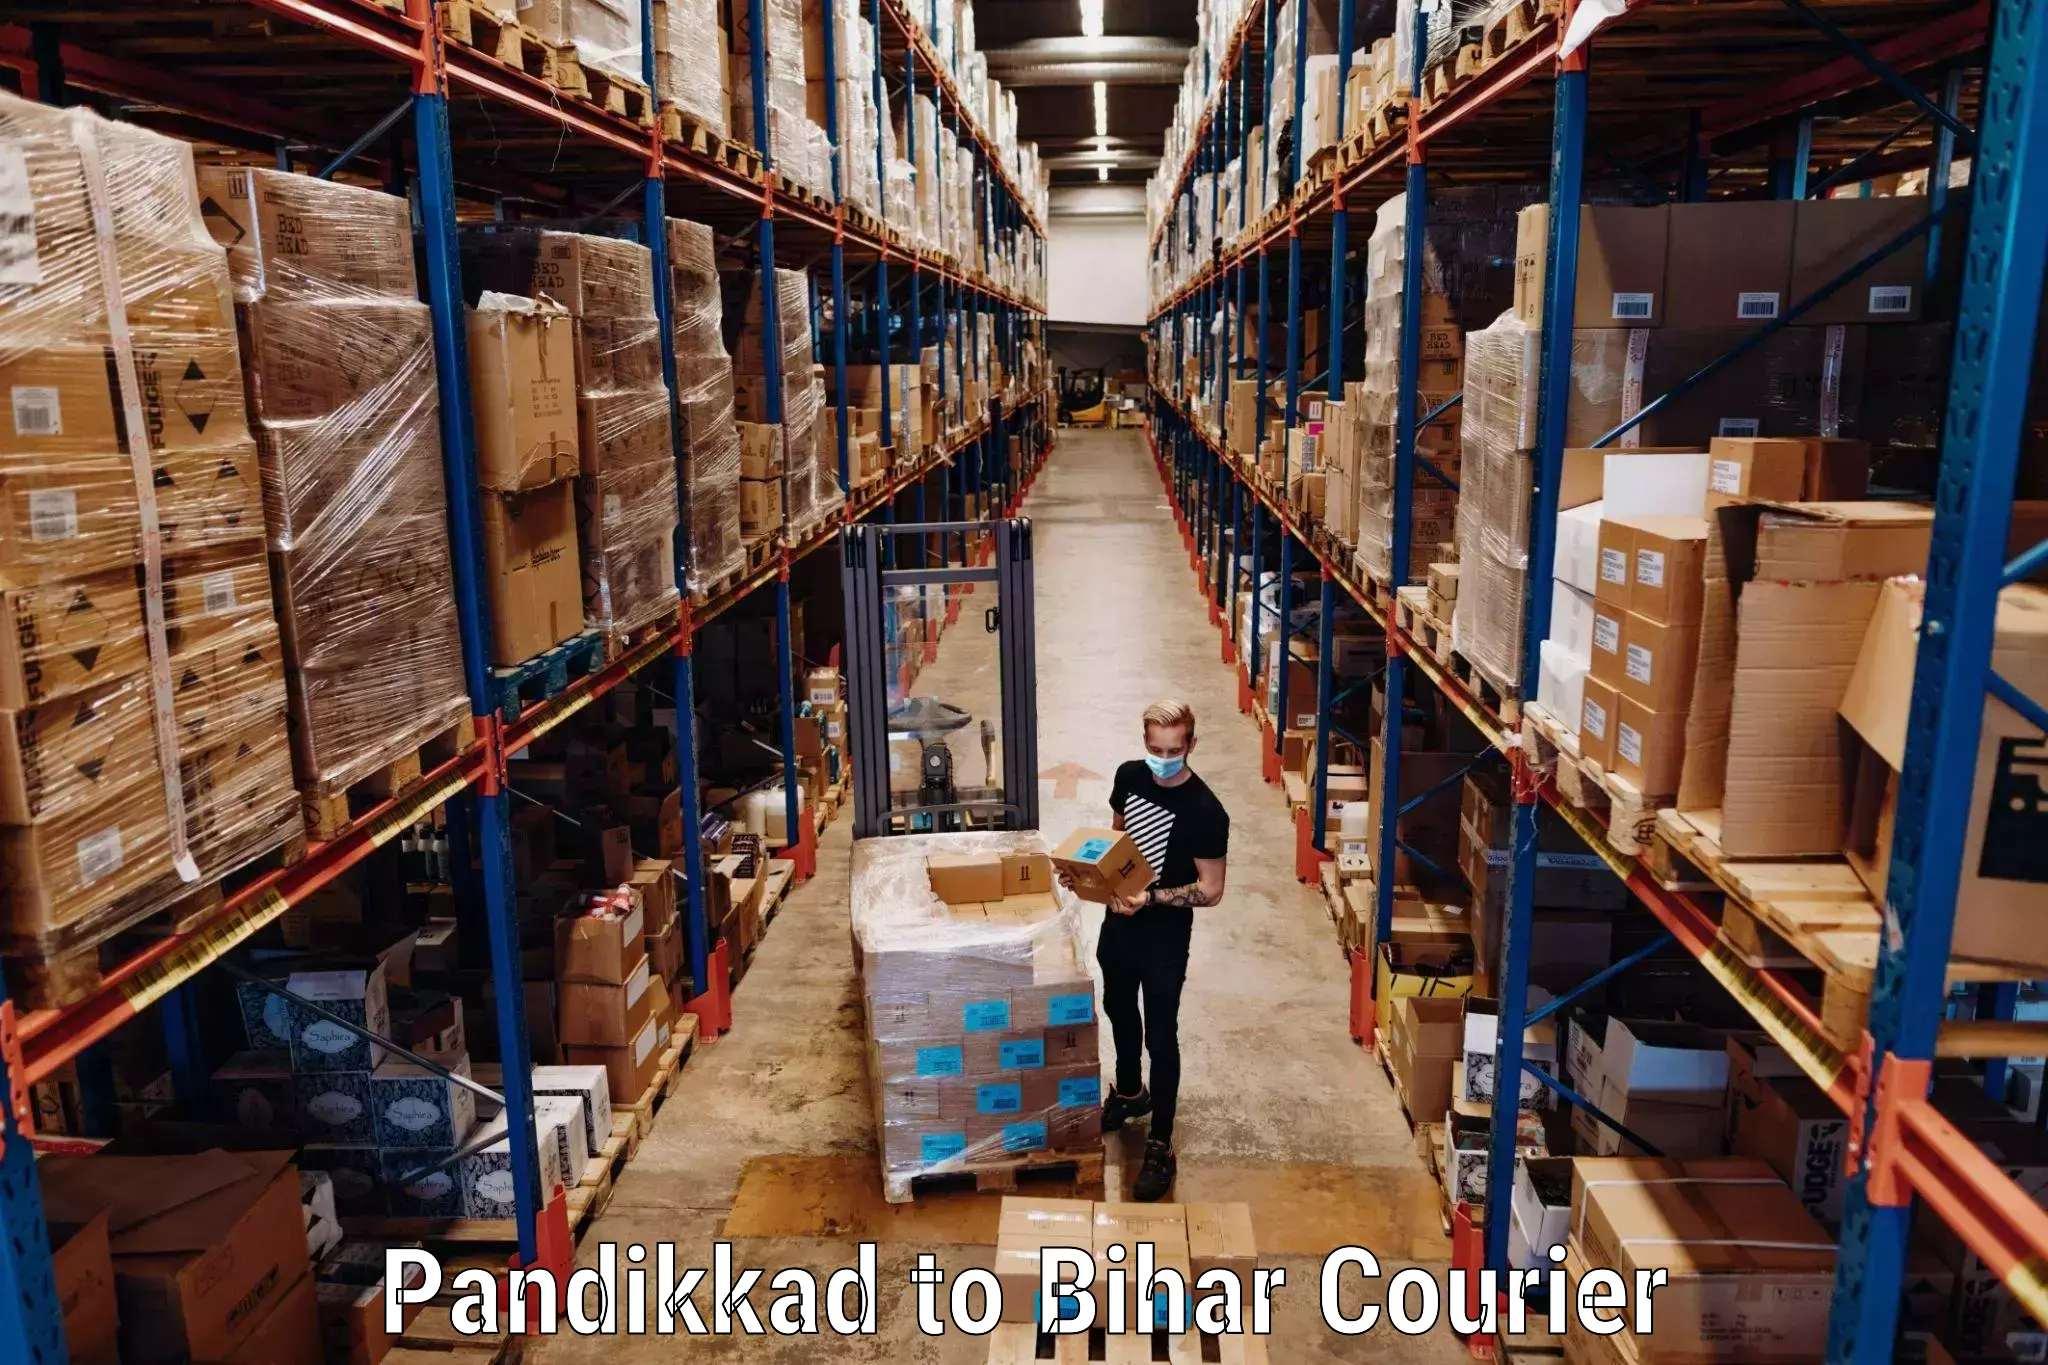 Luggage shipping service Pandikkad to Jevargi